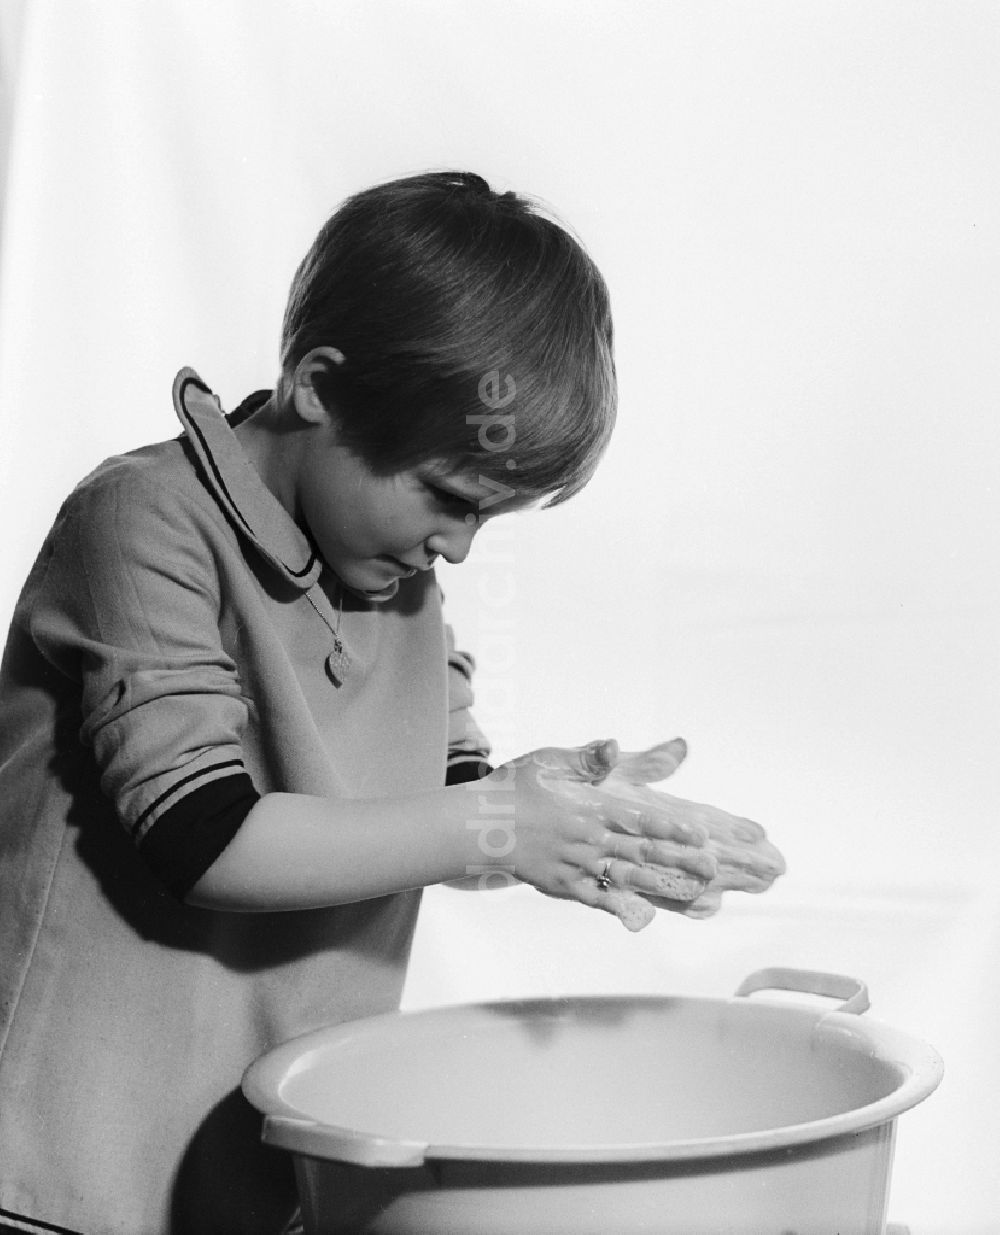 DDR-Bildarchiv: Berlin - Kleines Mädchen beim Hände waschen über einer Plastikschüssel in Berlin